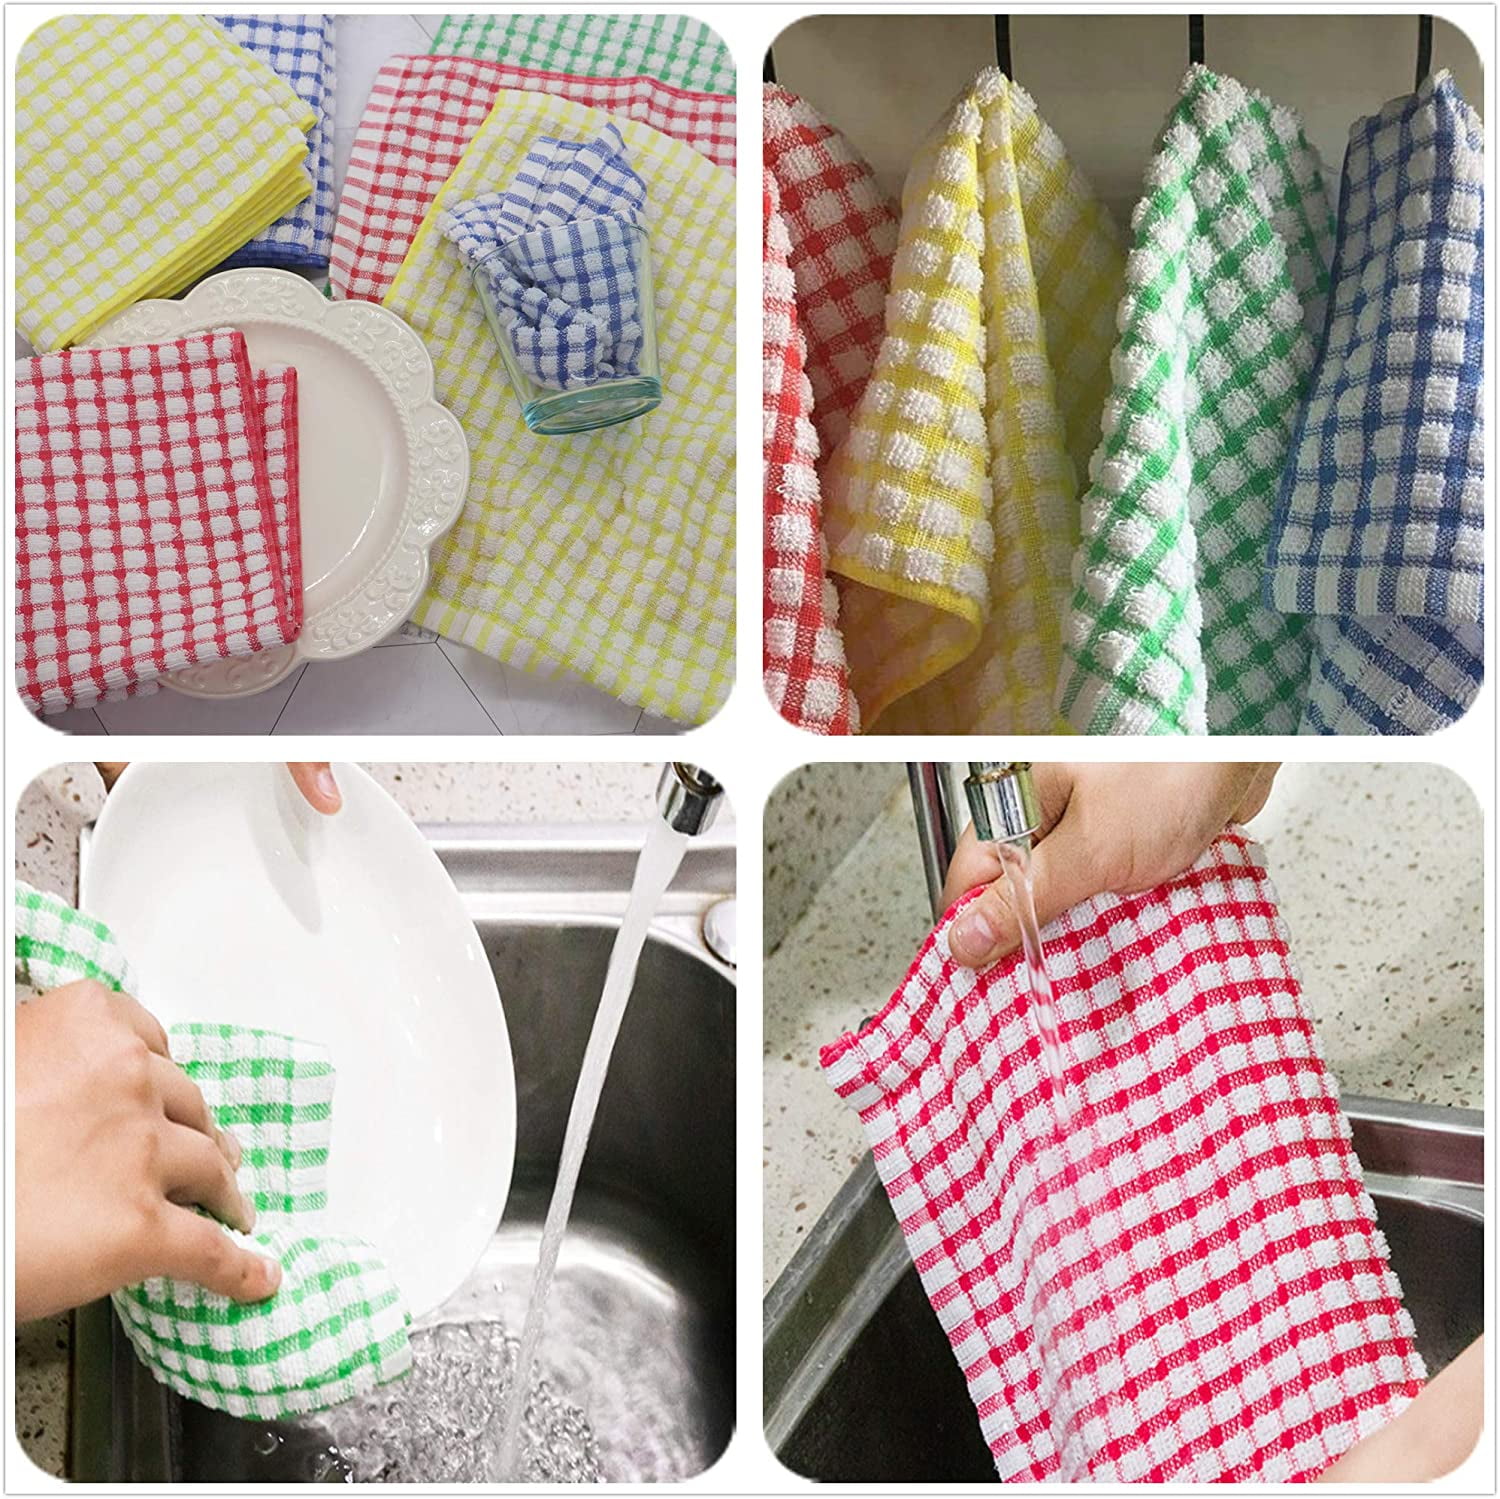 Mix Color11x12 Incheskitchen Dishcloths 12pcs 11x12 Inches Bulk Cotton  Kitchen Dish Cloths Scrubbing Wash Cloths Sets (mix Color)